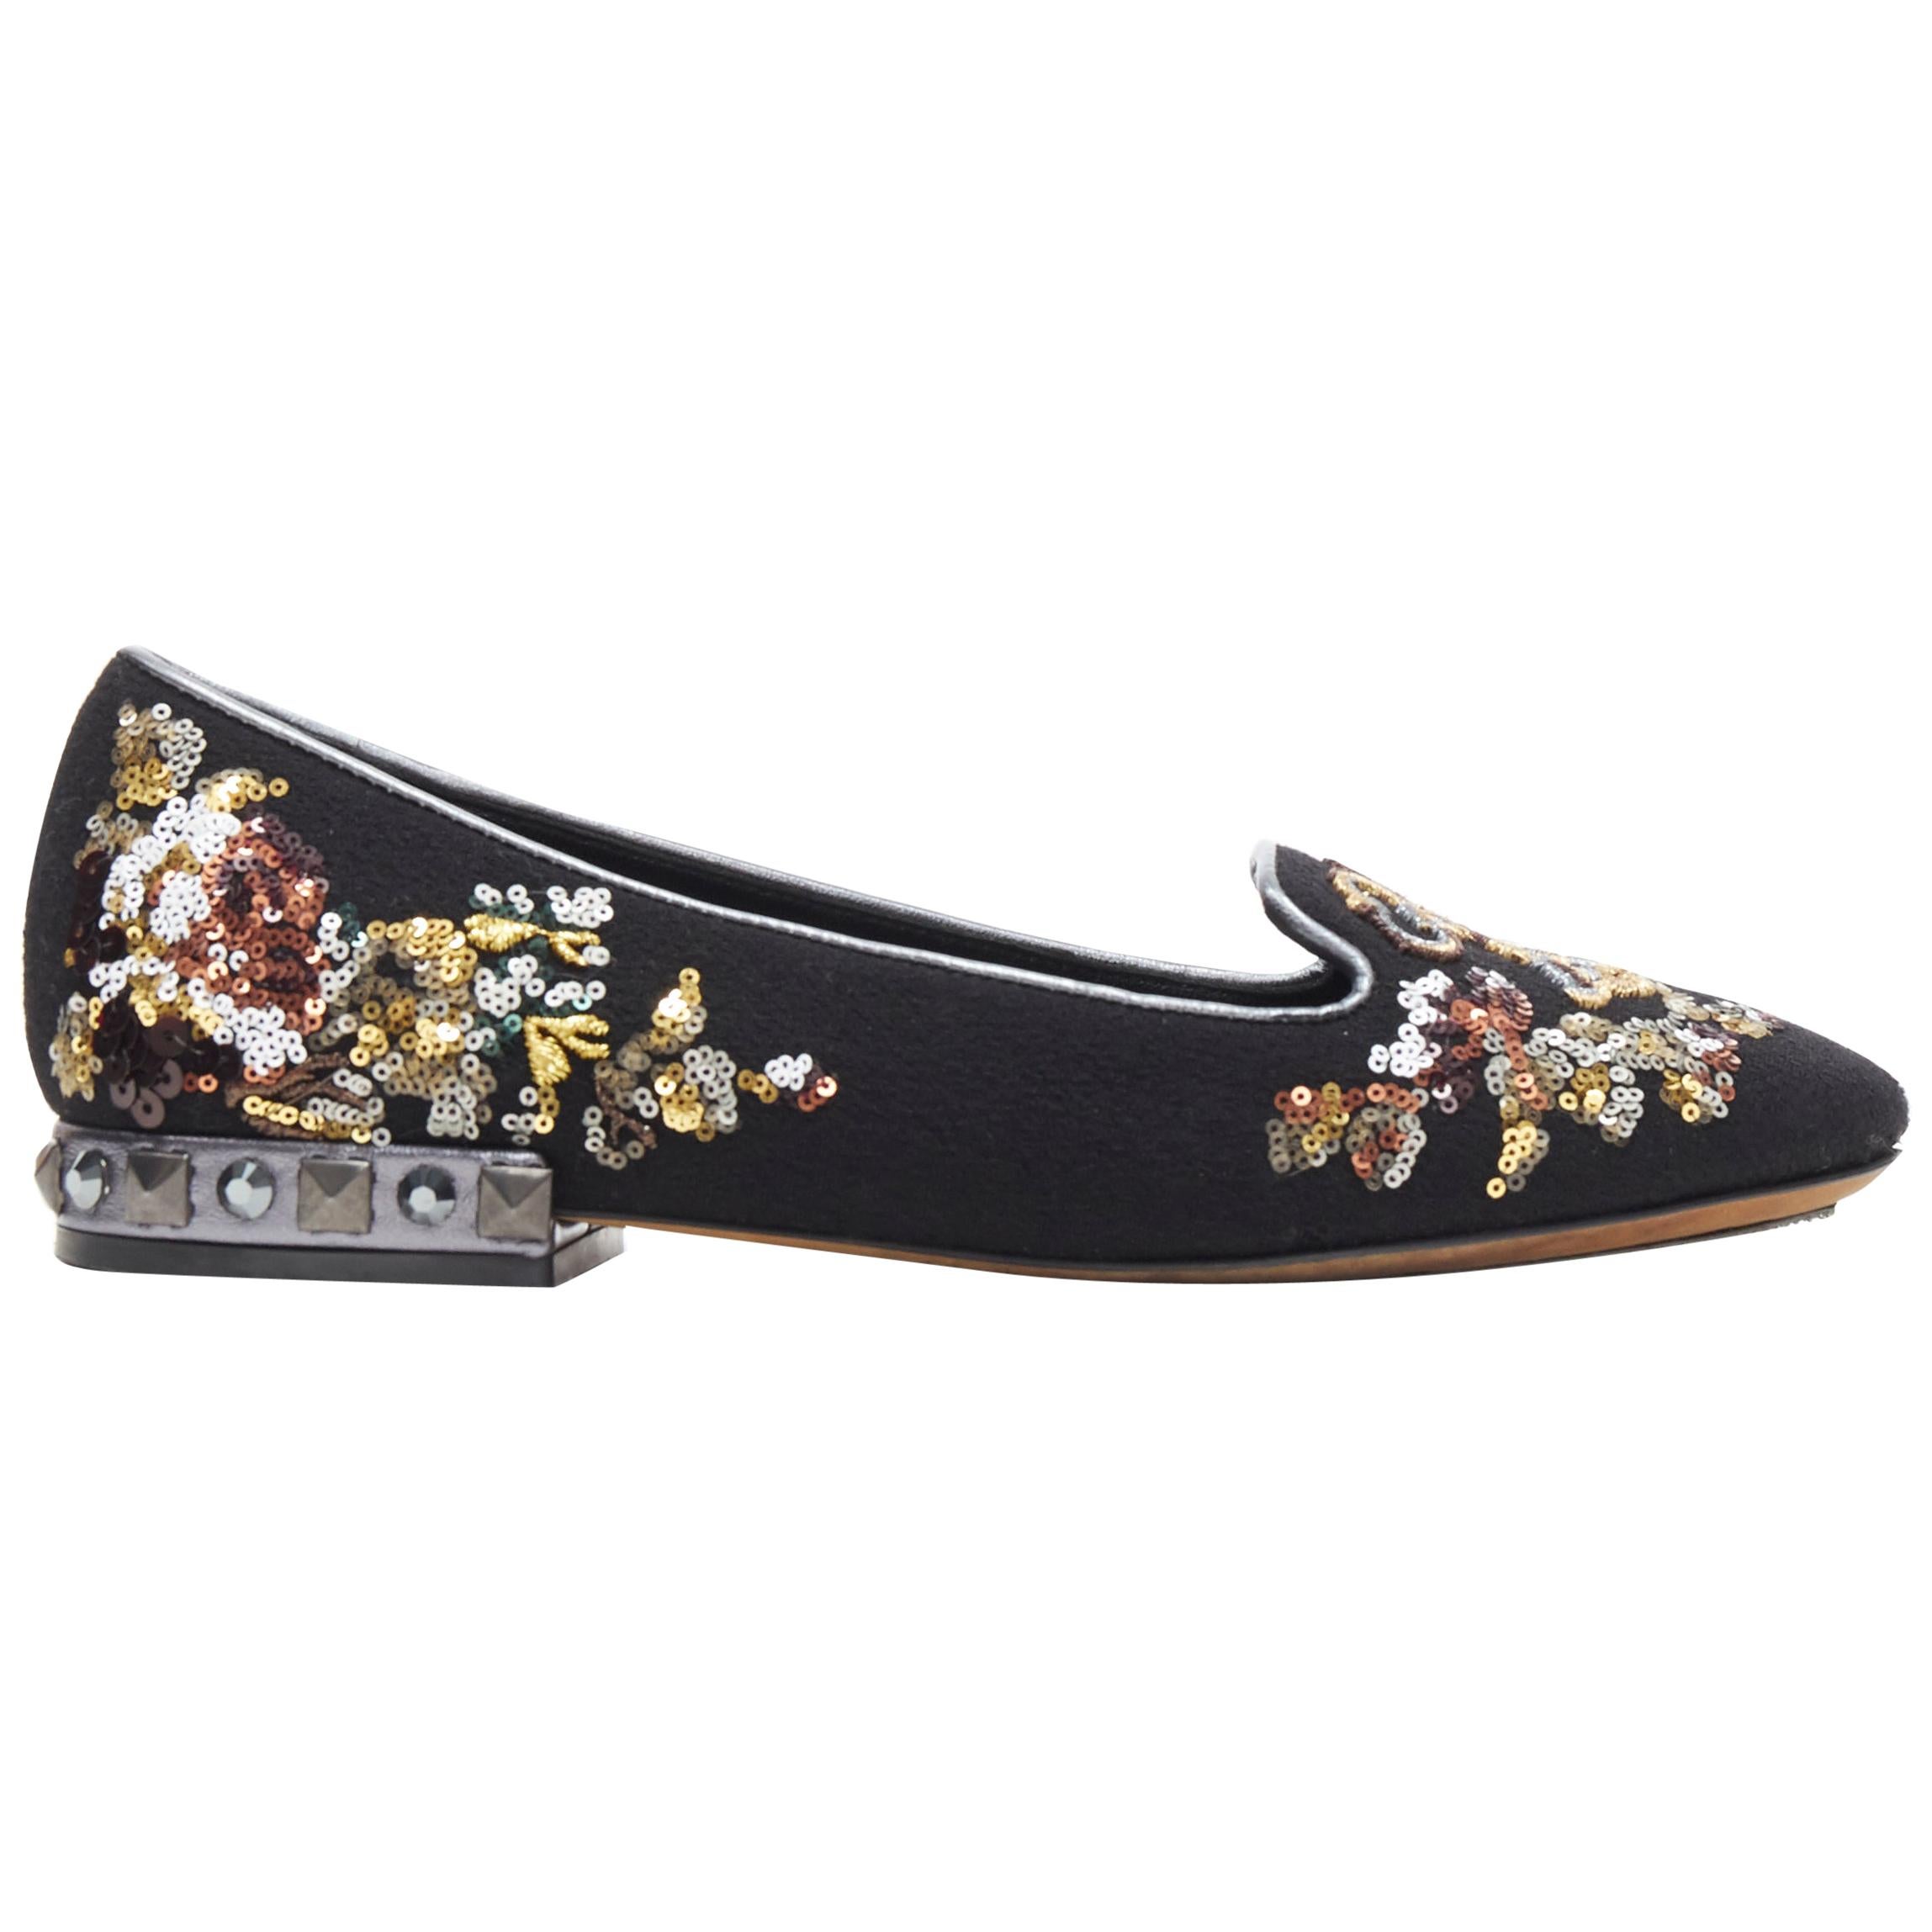 DOLCE GABBANA black suede royalty key sequin studded heel flat loafer EU35